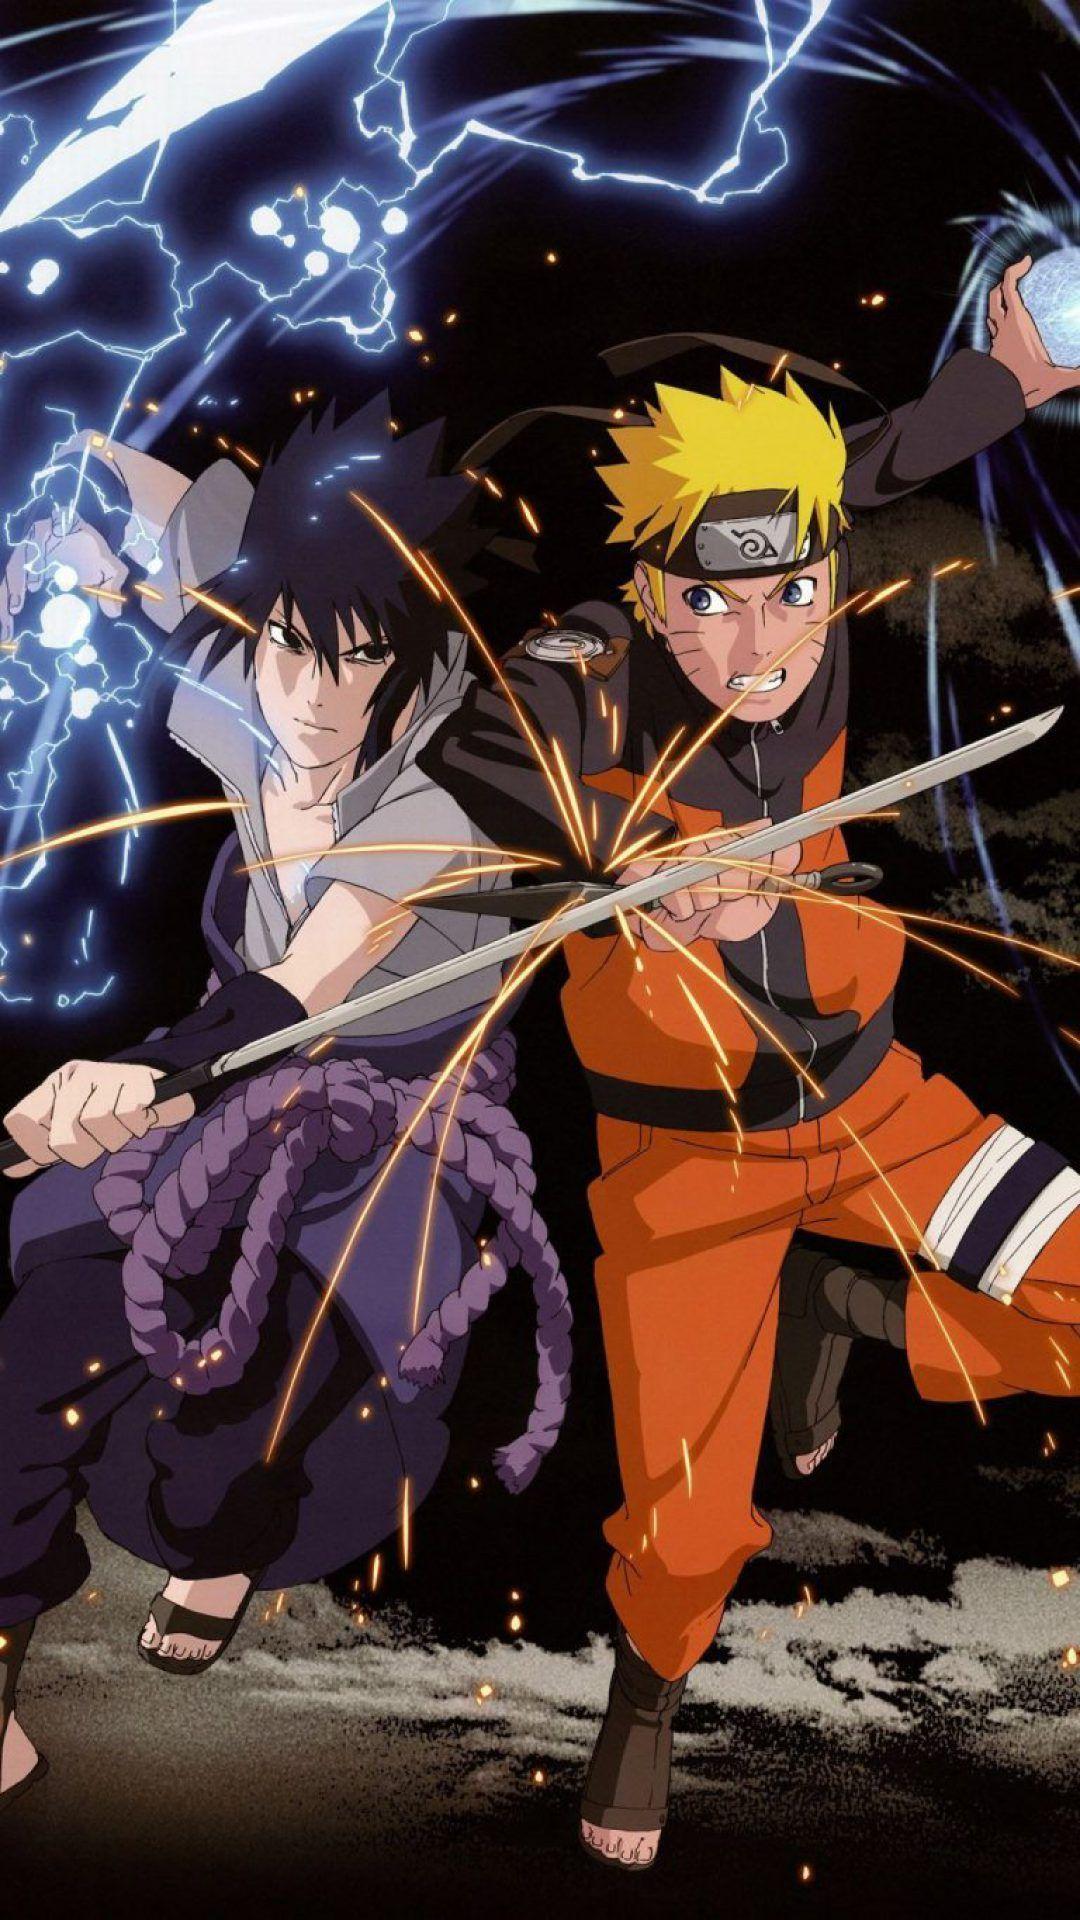 Sasuke Naruto Iphone Wallpapers Top Free Sasuke Naruto Iphone Backgrounds Wallpaperaccess